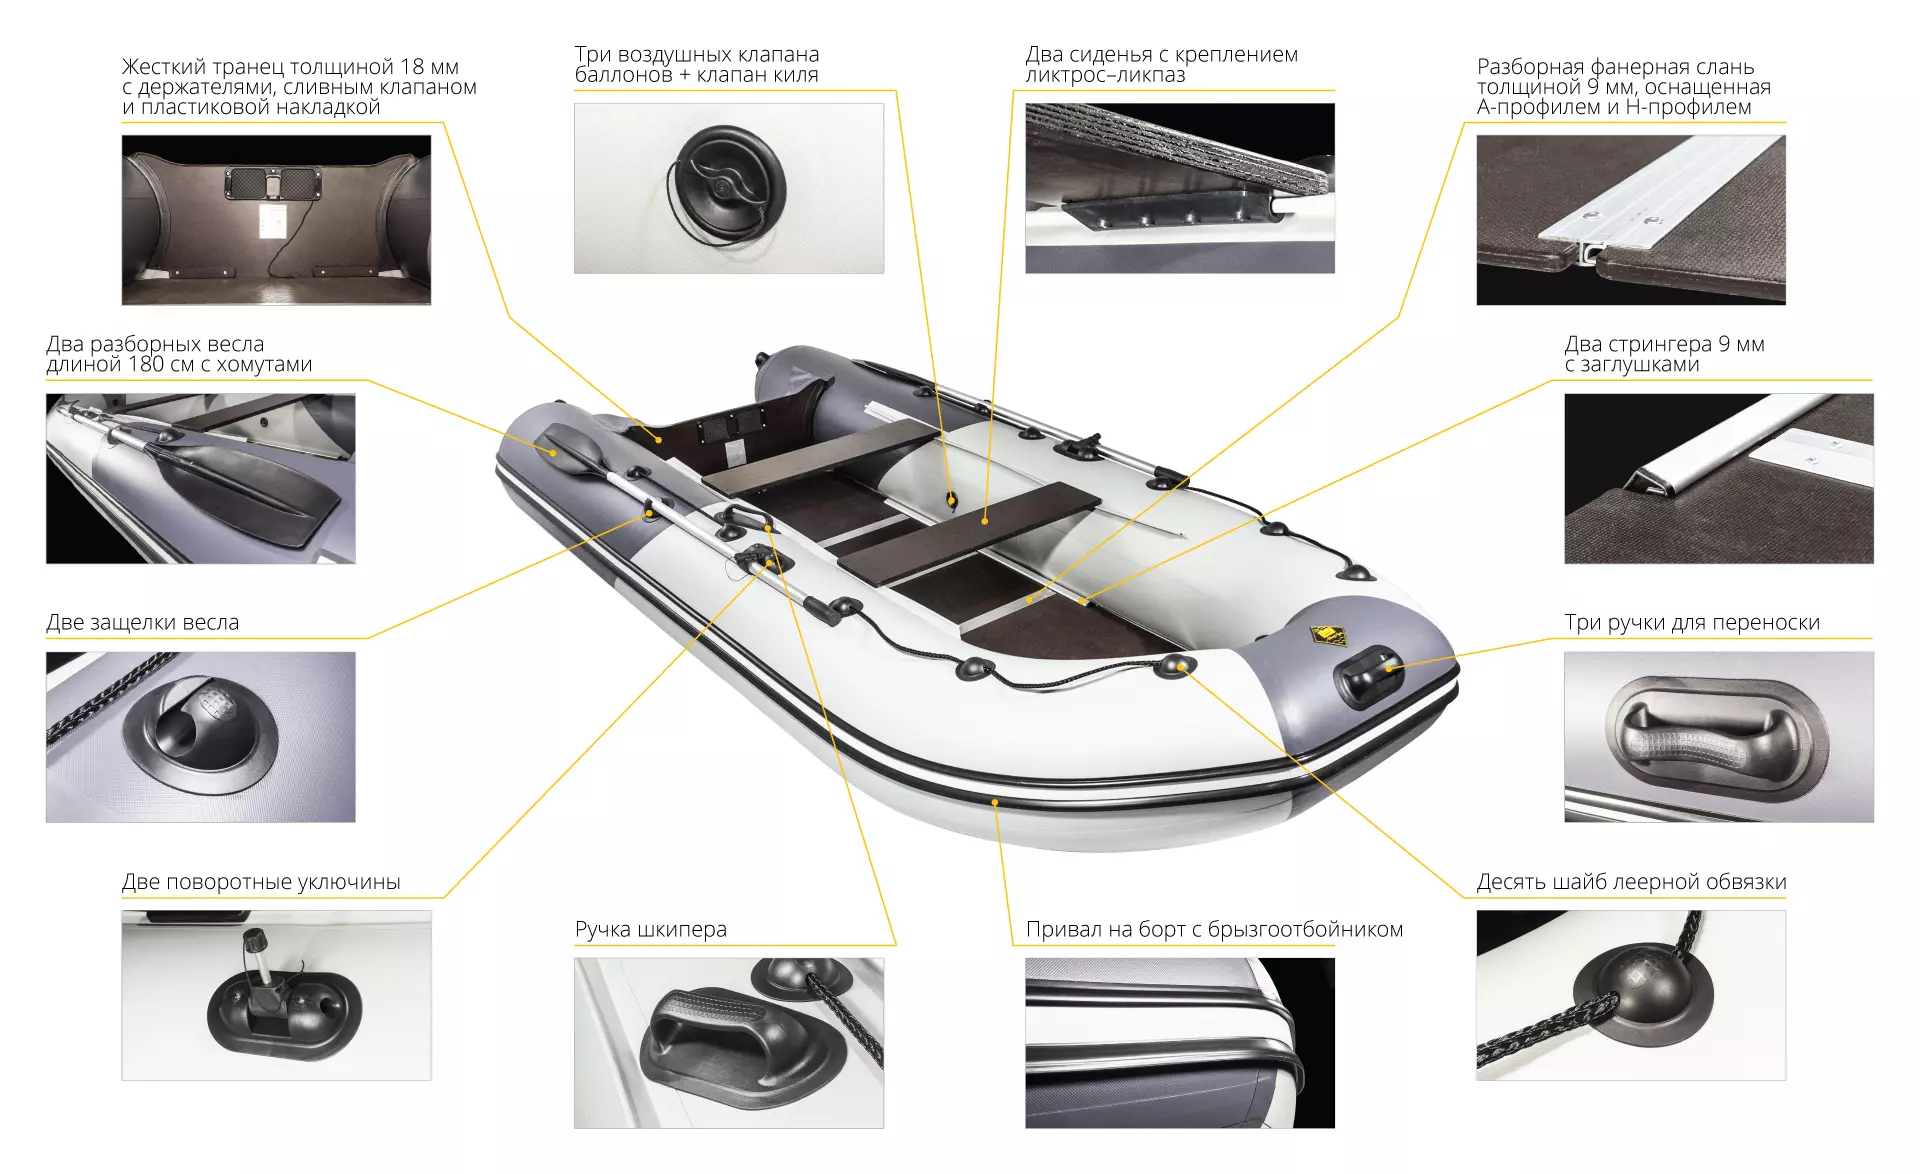 Моторная лодка Ривьера 3600 СК Компакт - купить в интернет-магазине Лигалодок по цене 32500 руб.